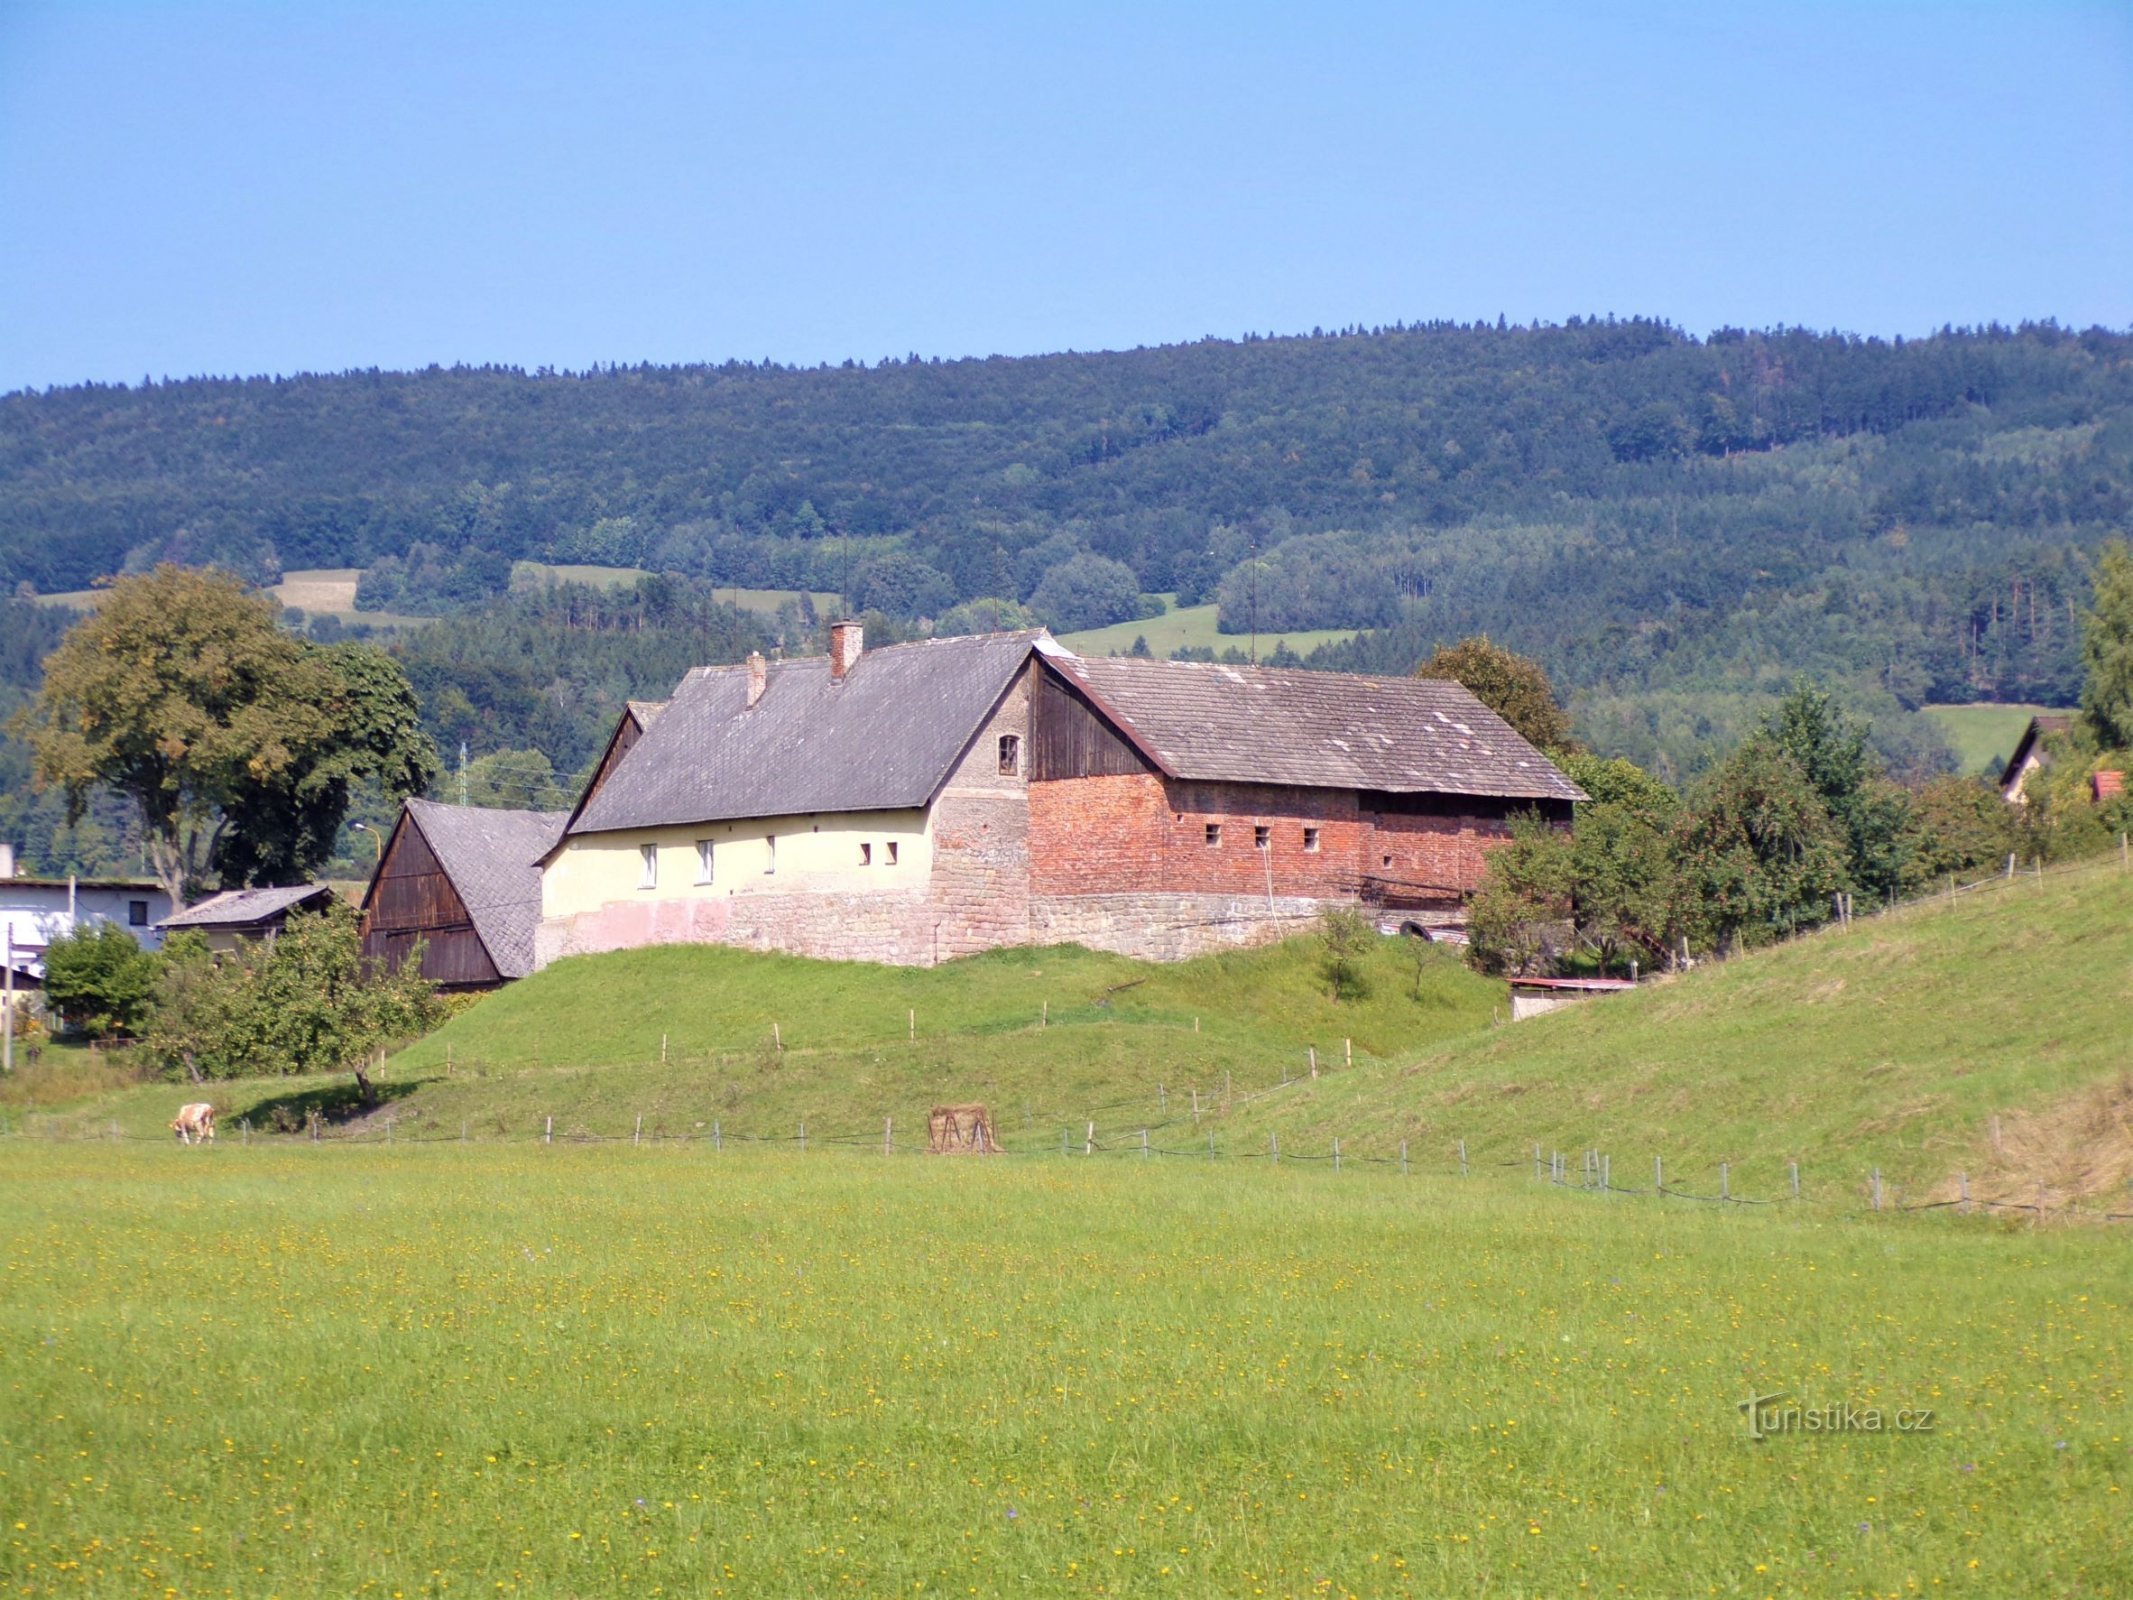 Bất động sản số 242 trên địa điểm của một pháo đài cũ (Velké Svatoňovice, 6.9.2021/XNUMX/XNUMX)